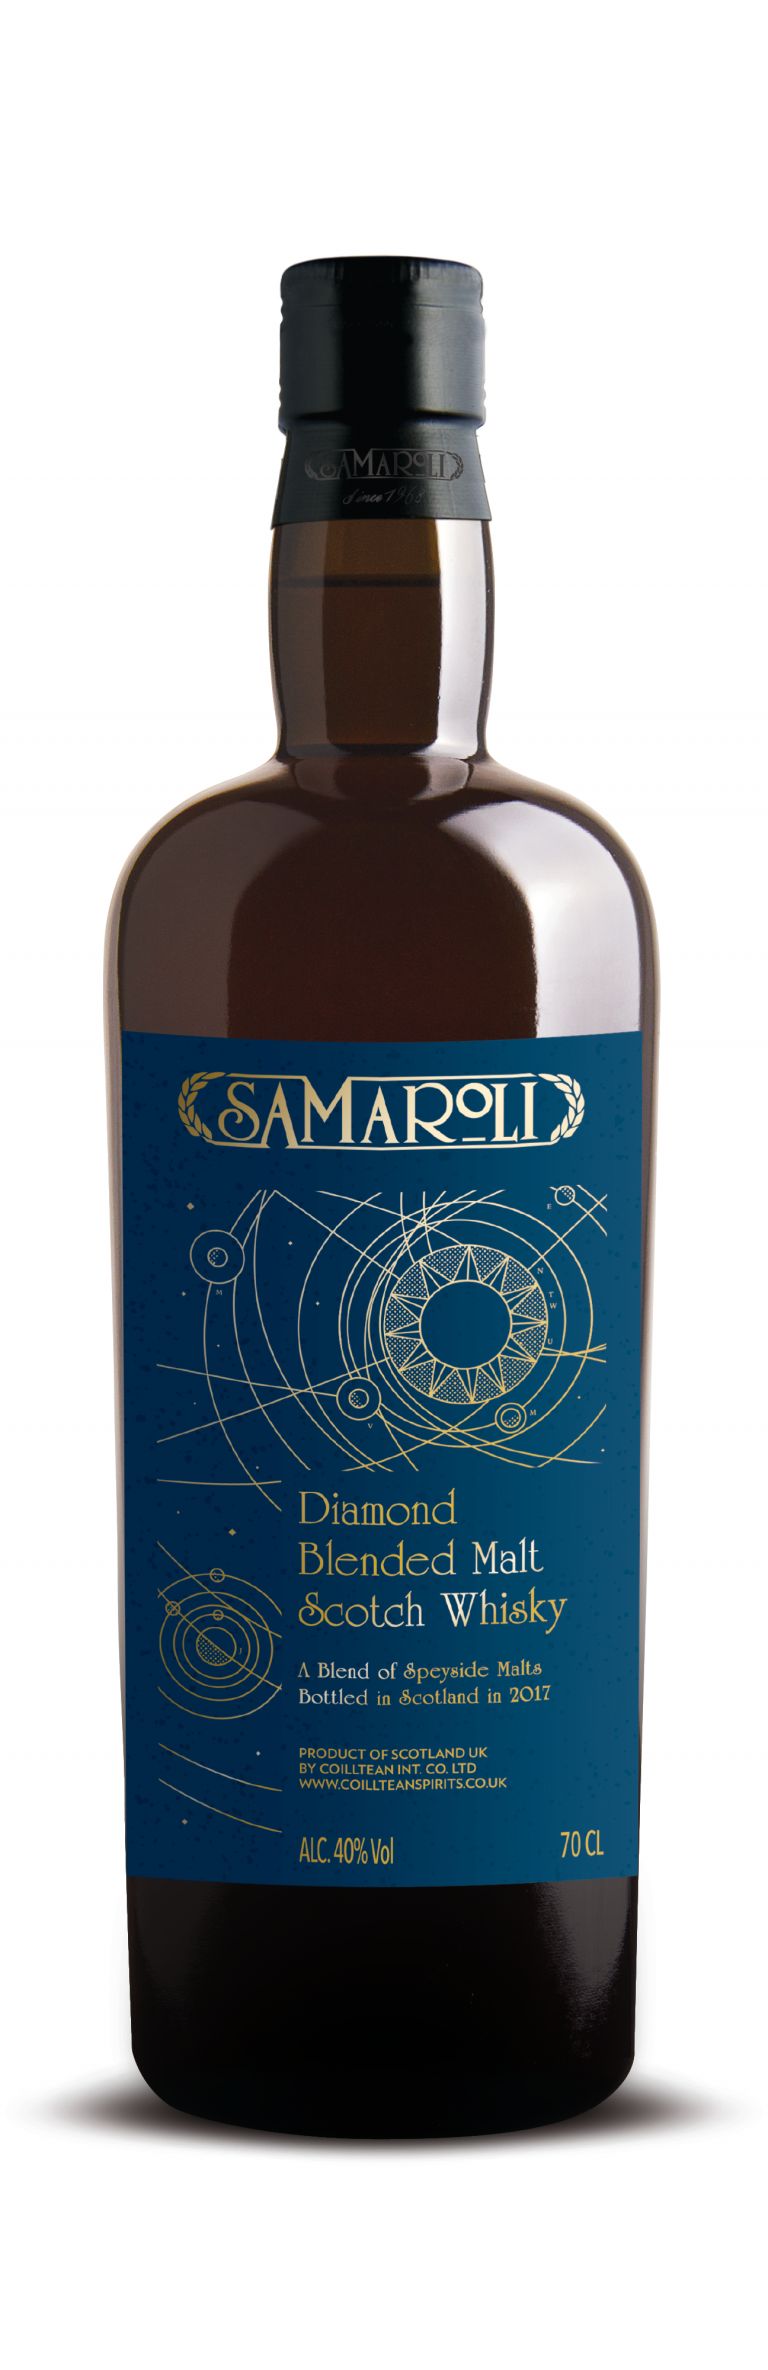 Samaroli Diamond - Blended Malt Scotch Whisky - ed. 2017 - 70 cl